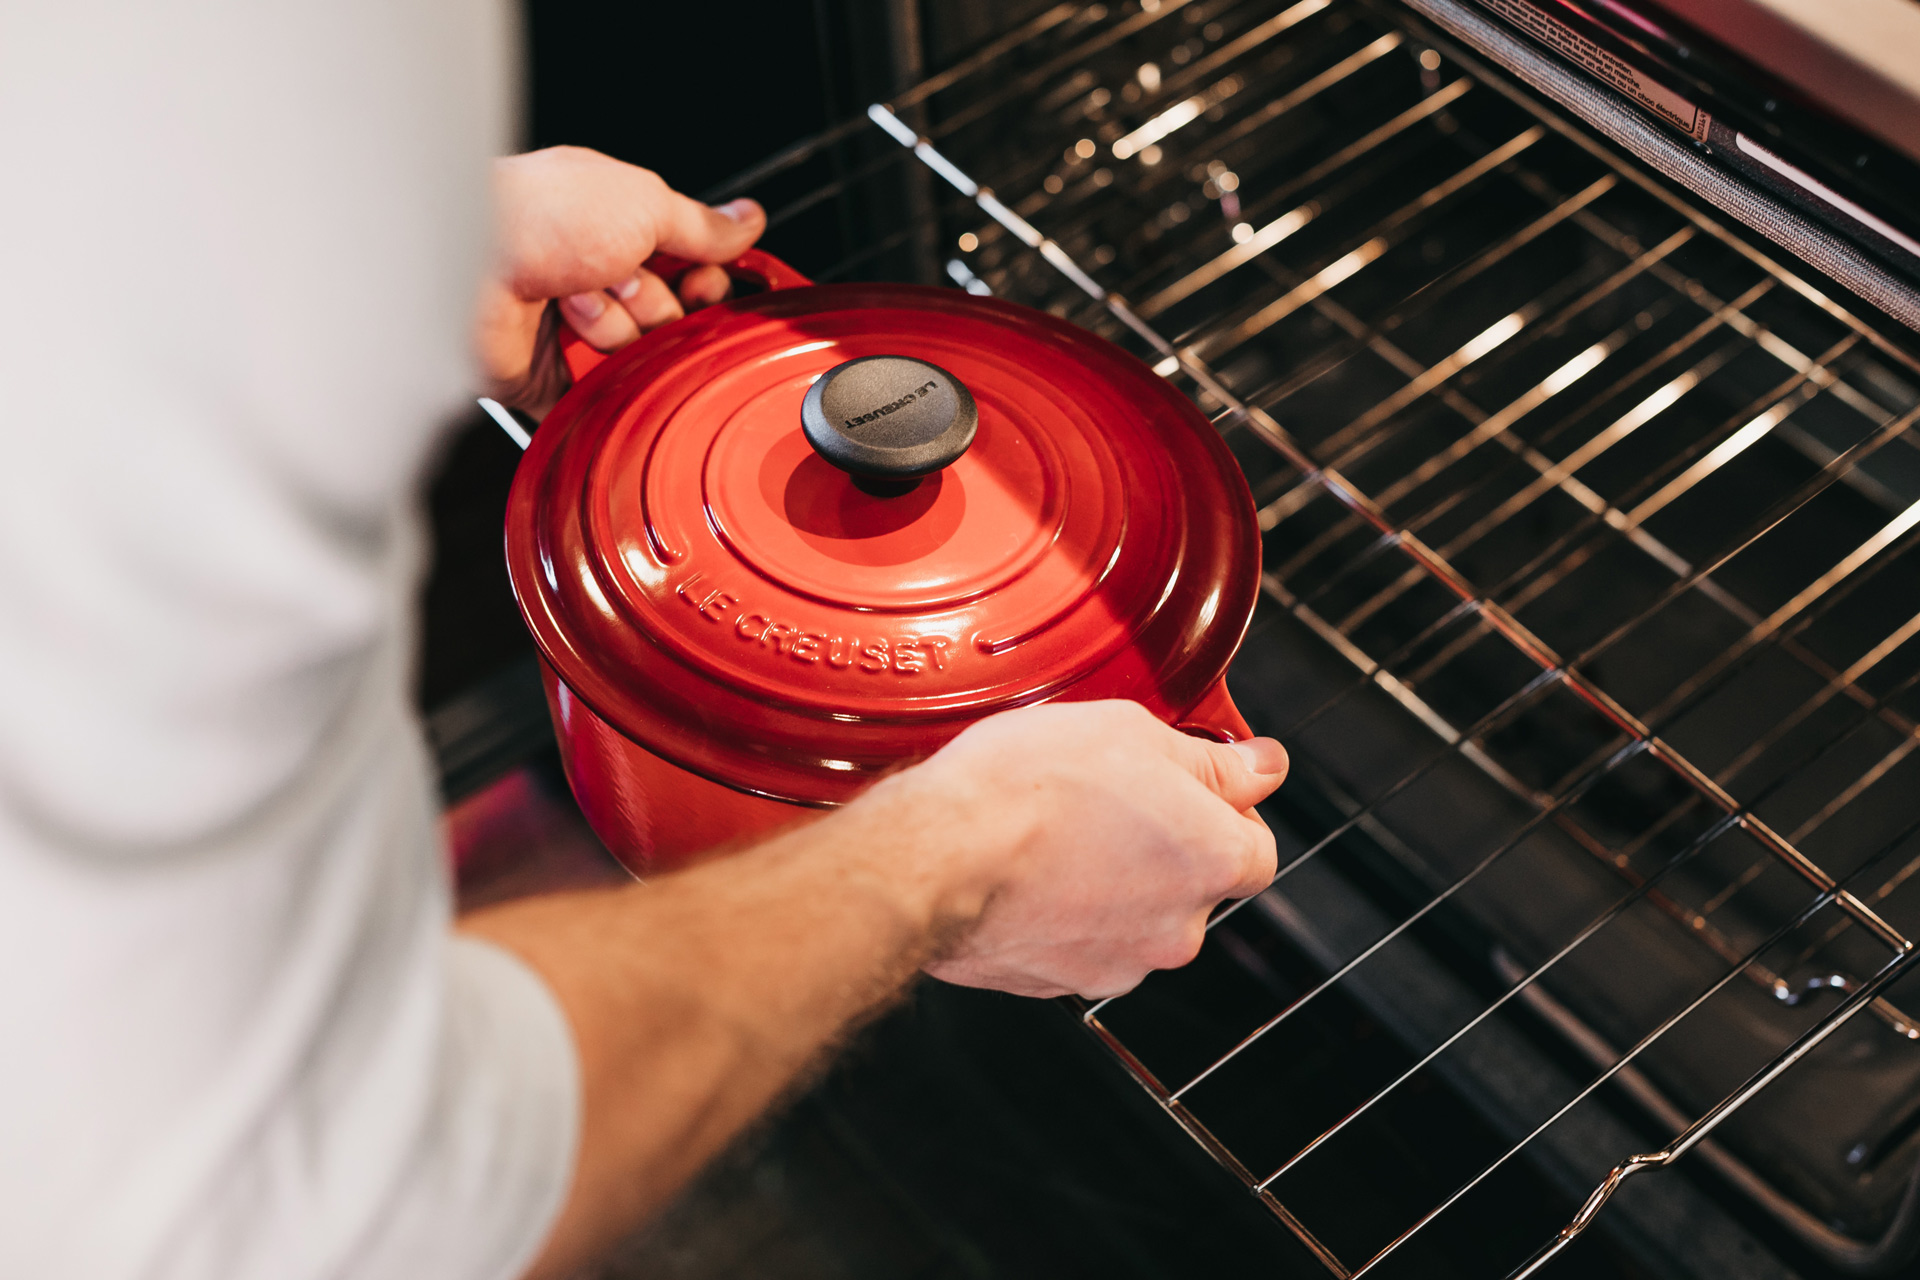 Man puts Le Creuset pot into sparkling clean oven